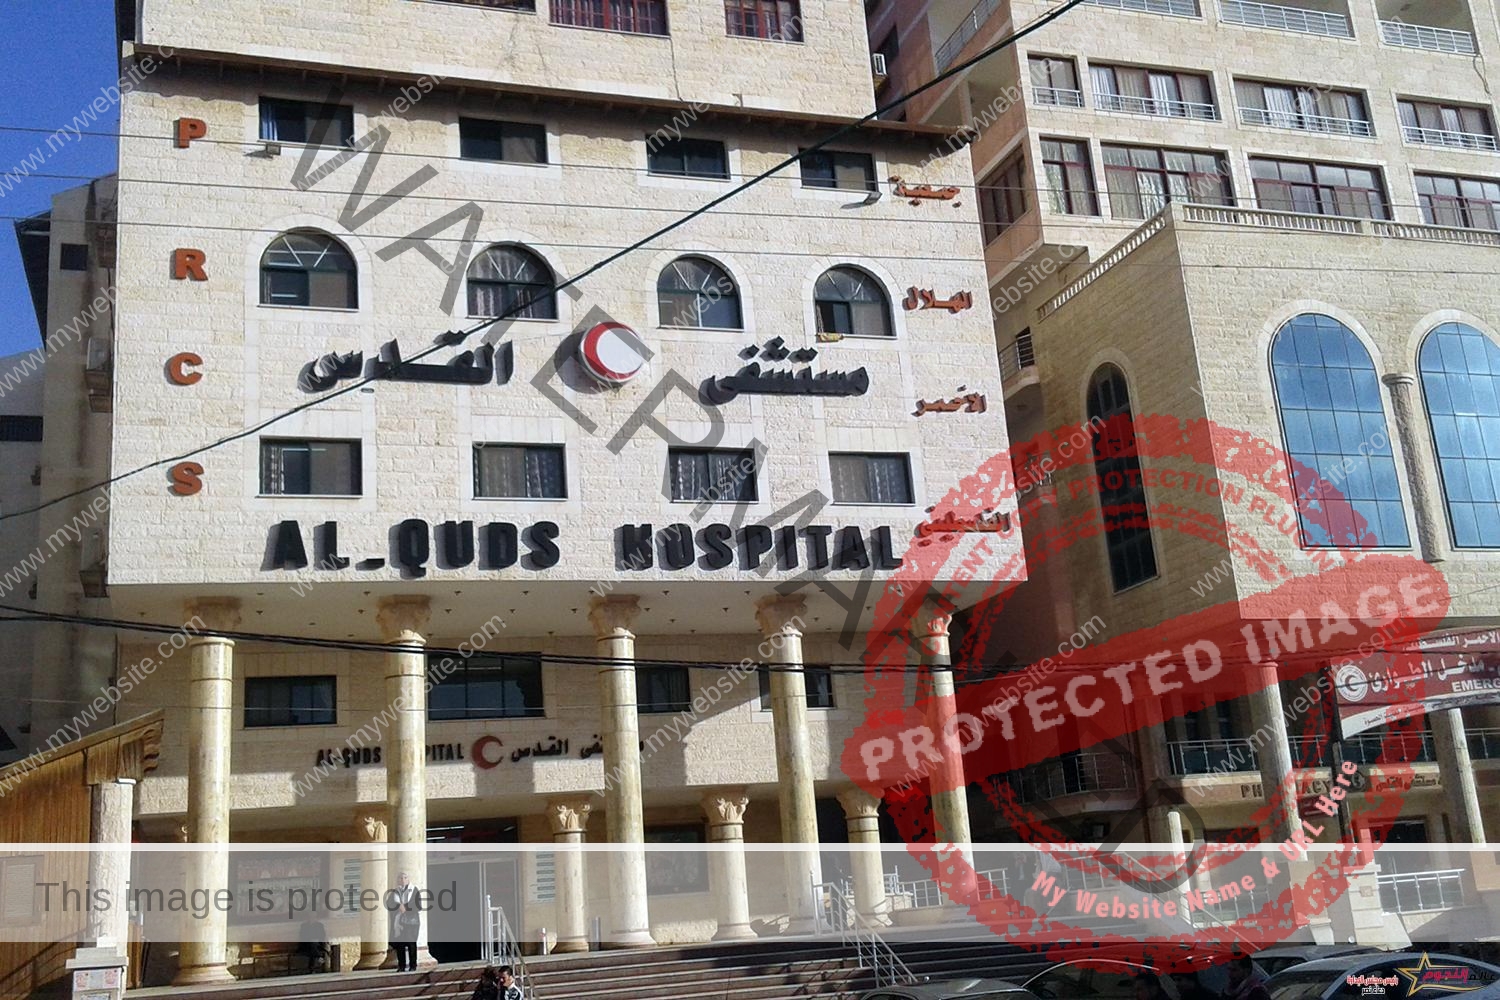 الهلال الأحمر الفلسطينى: لن نخلى مستشفى القدس فى غزة رغم تهديدات الاحتلال